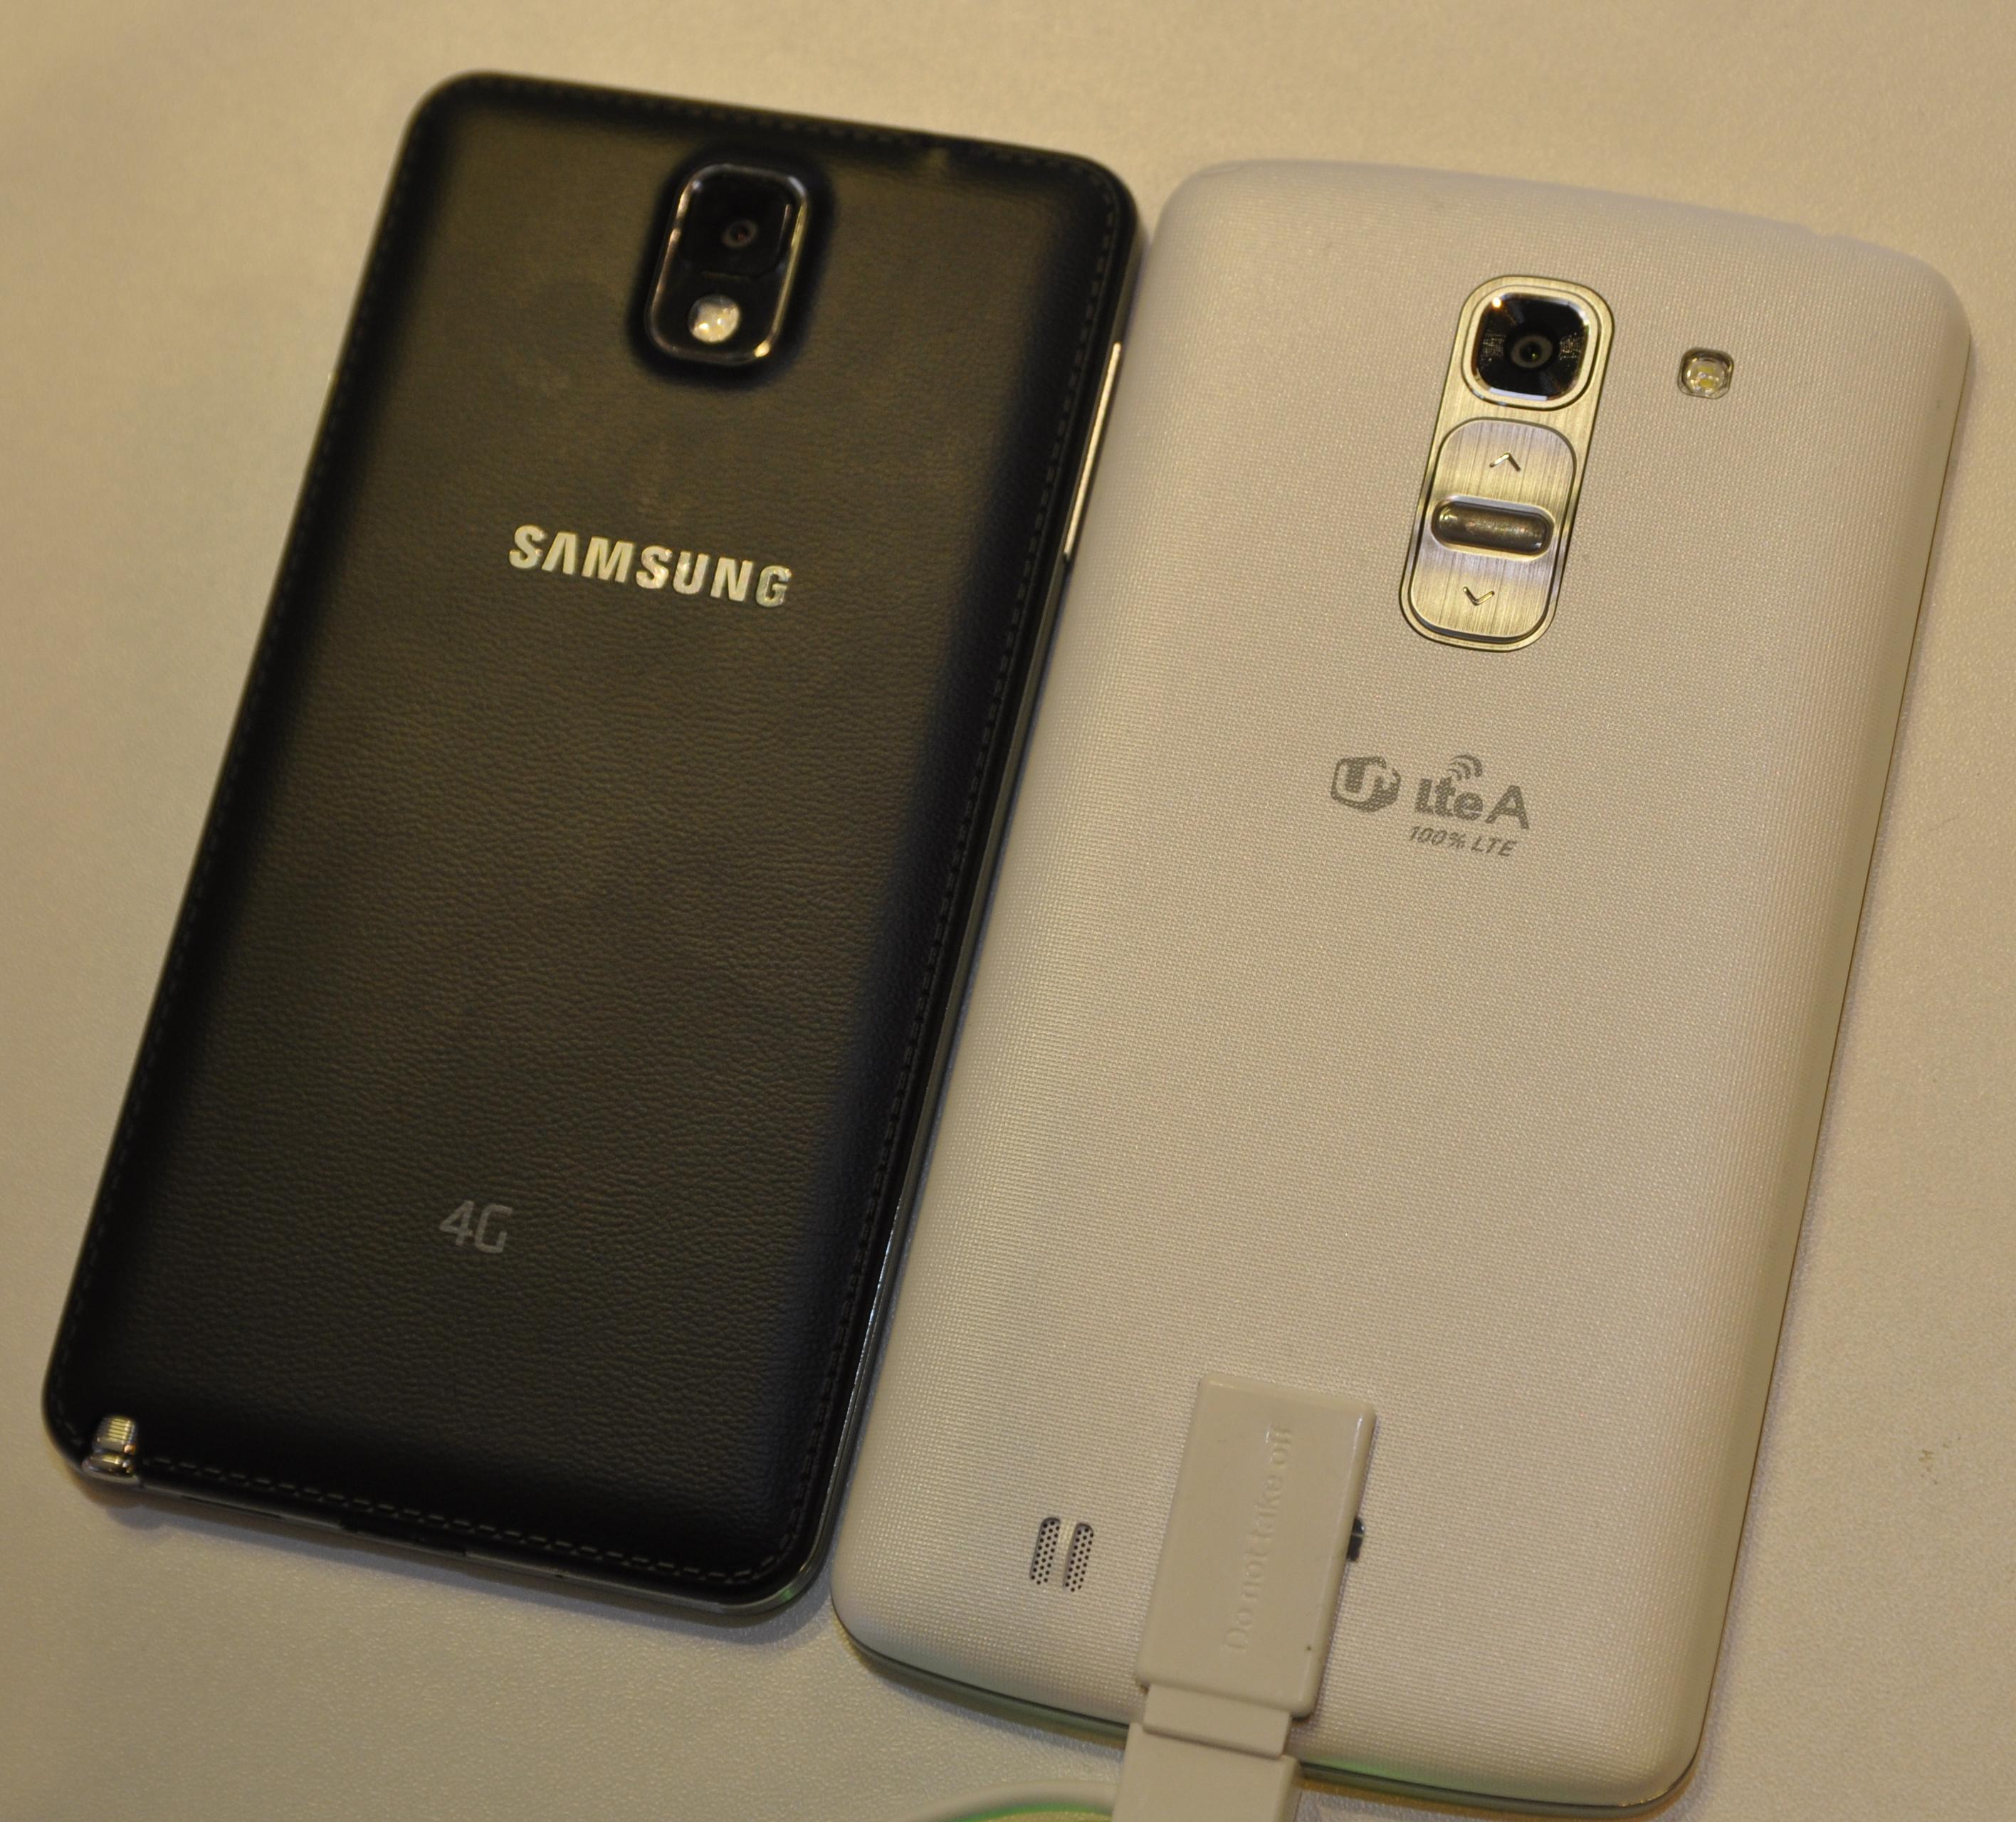 LG G Pro 2 ved siden av Samsungs Galaxy Note 3. Sistnevnte har 0,2 tommer mindre skjerm, men det skiller ikke stort på størrelse mellom dem.Foto: Finn Jarle Kvalheim, Amobil.no